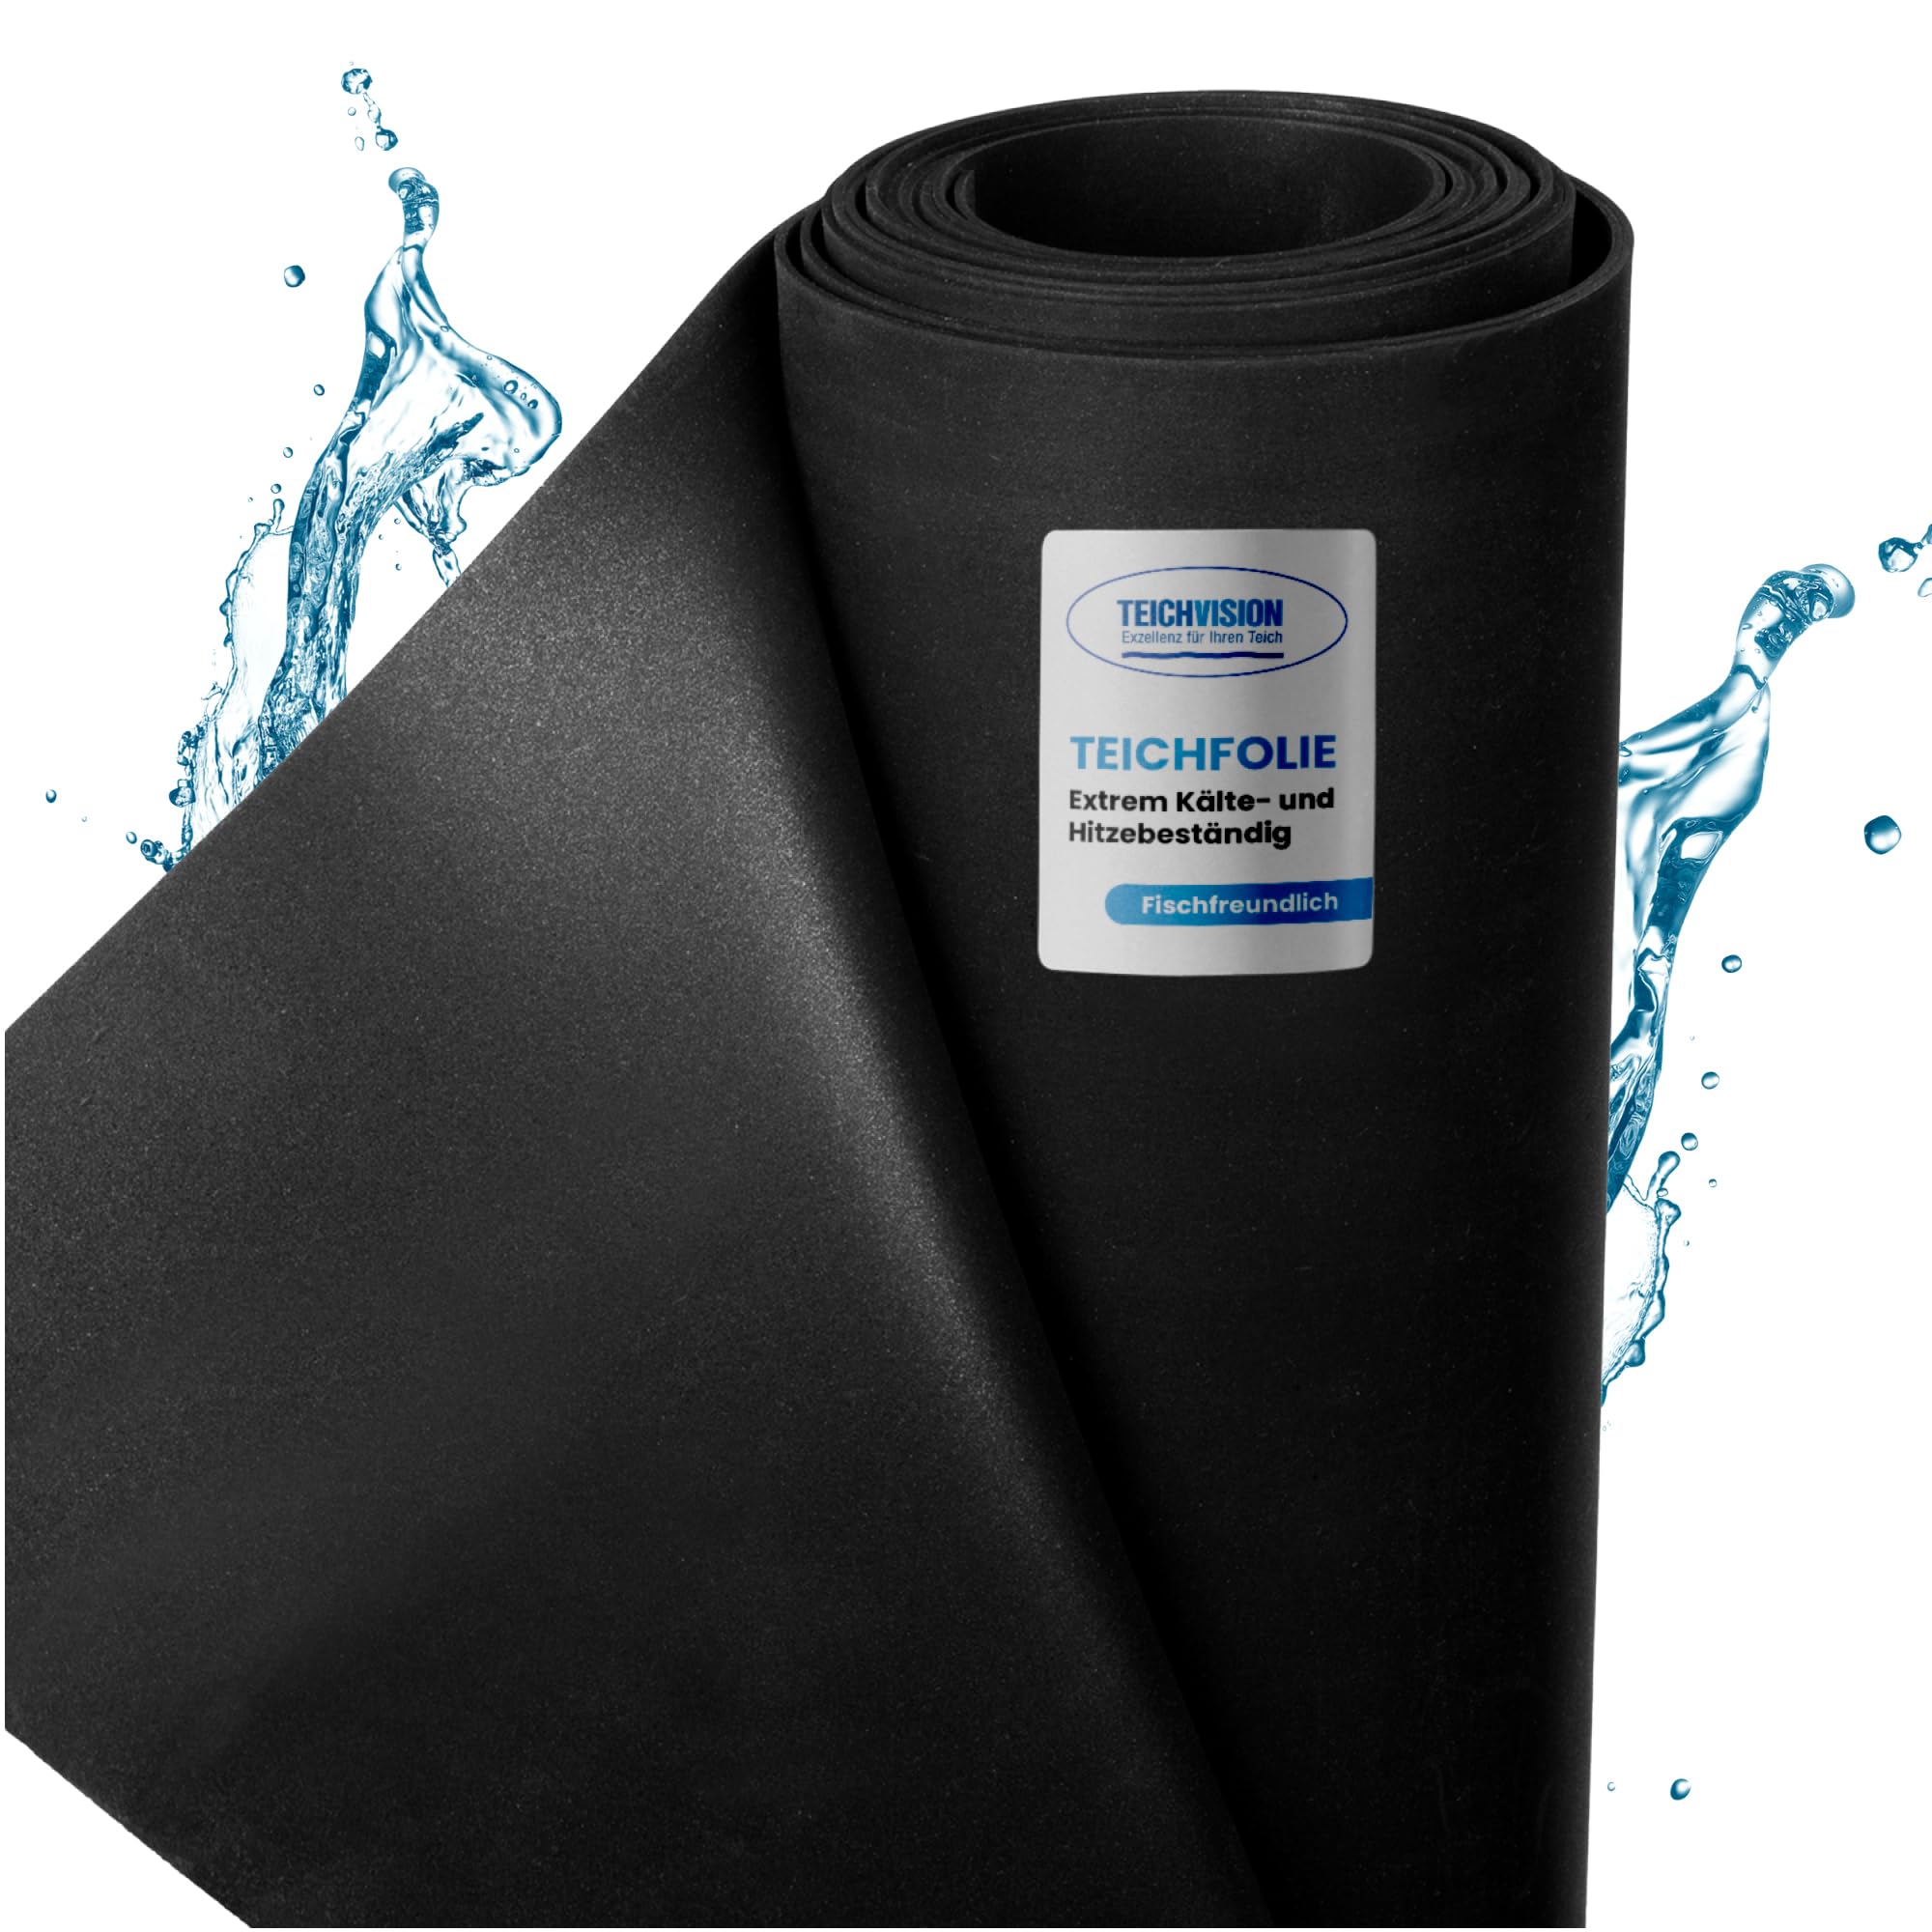 TeichVision - Premium EPDM Teichfolie Stärke 1 mm - 4,88 m x 11 m/naturgerechte EPDM Folie schwarz - besonders langlebig/auch geeignet als Hochbeet Folie wasserdicht